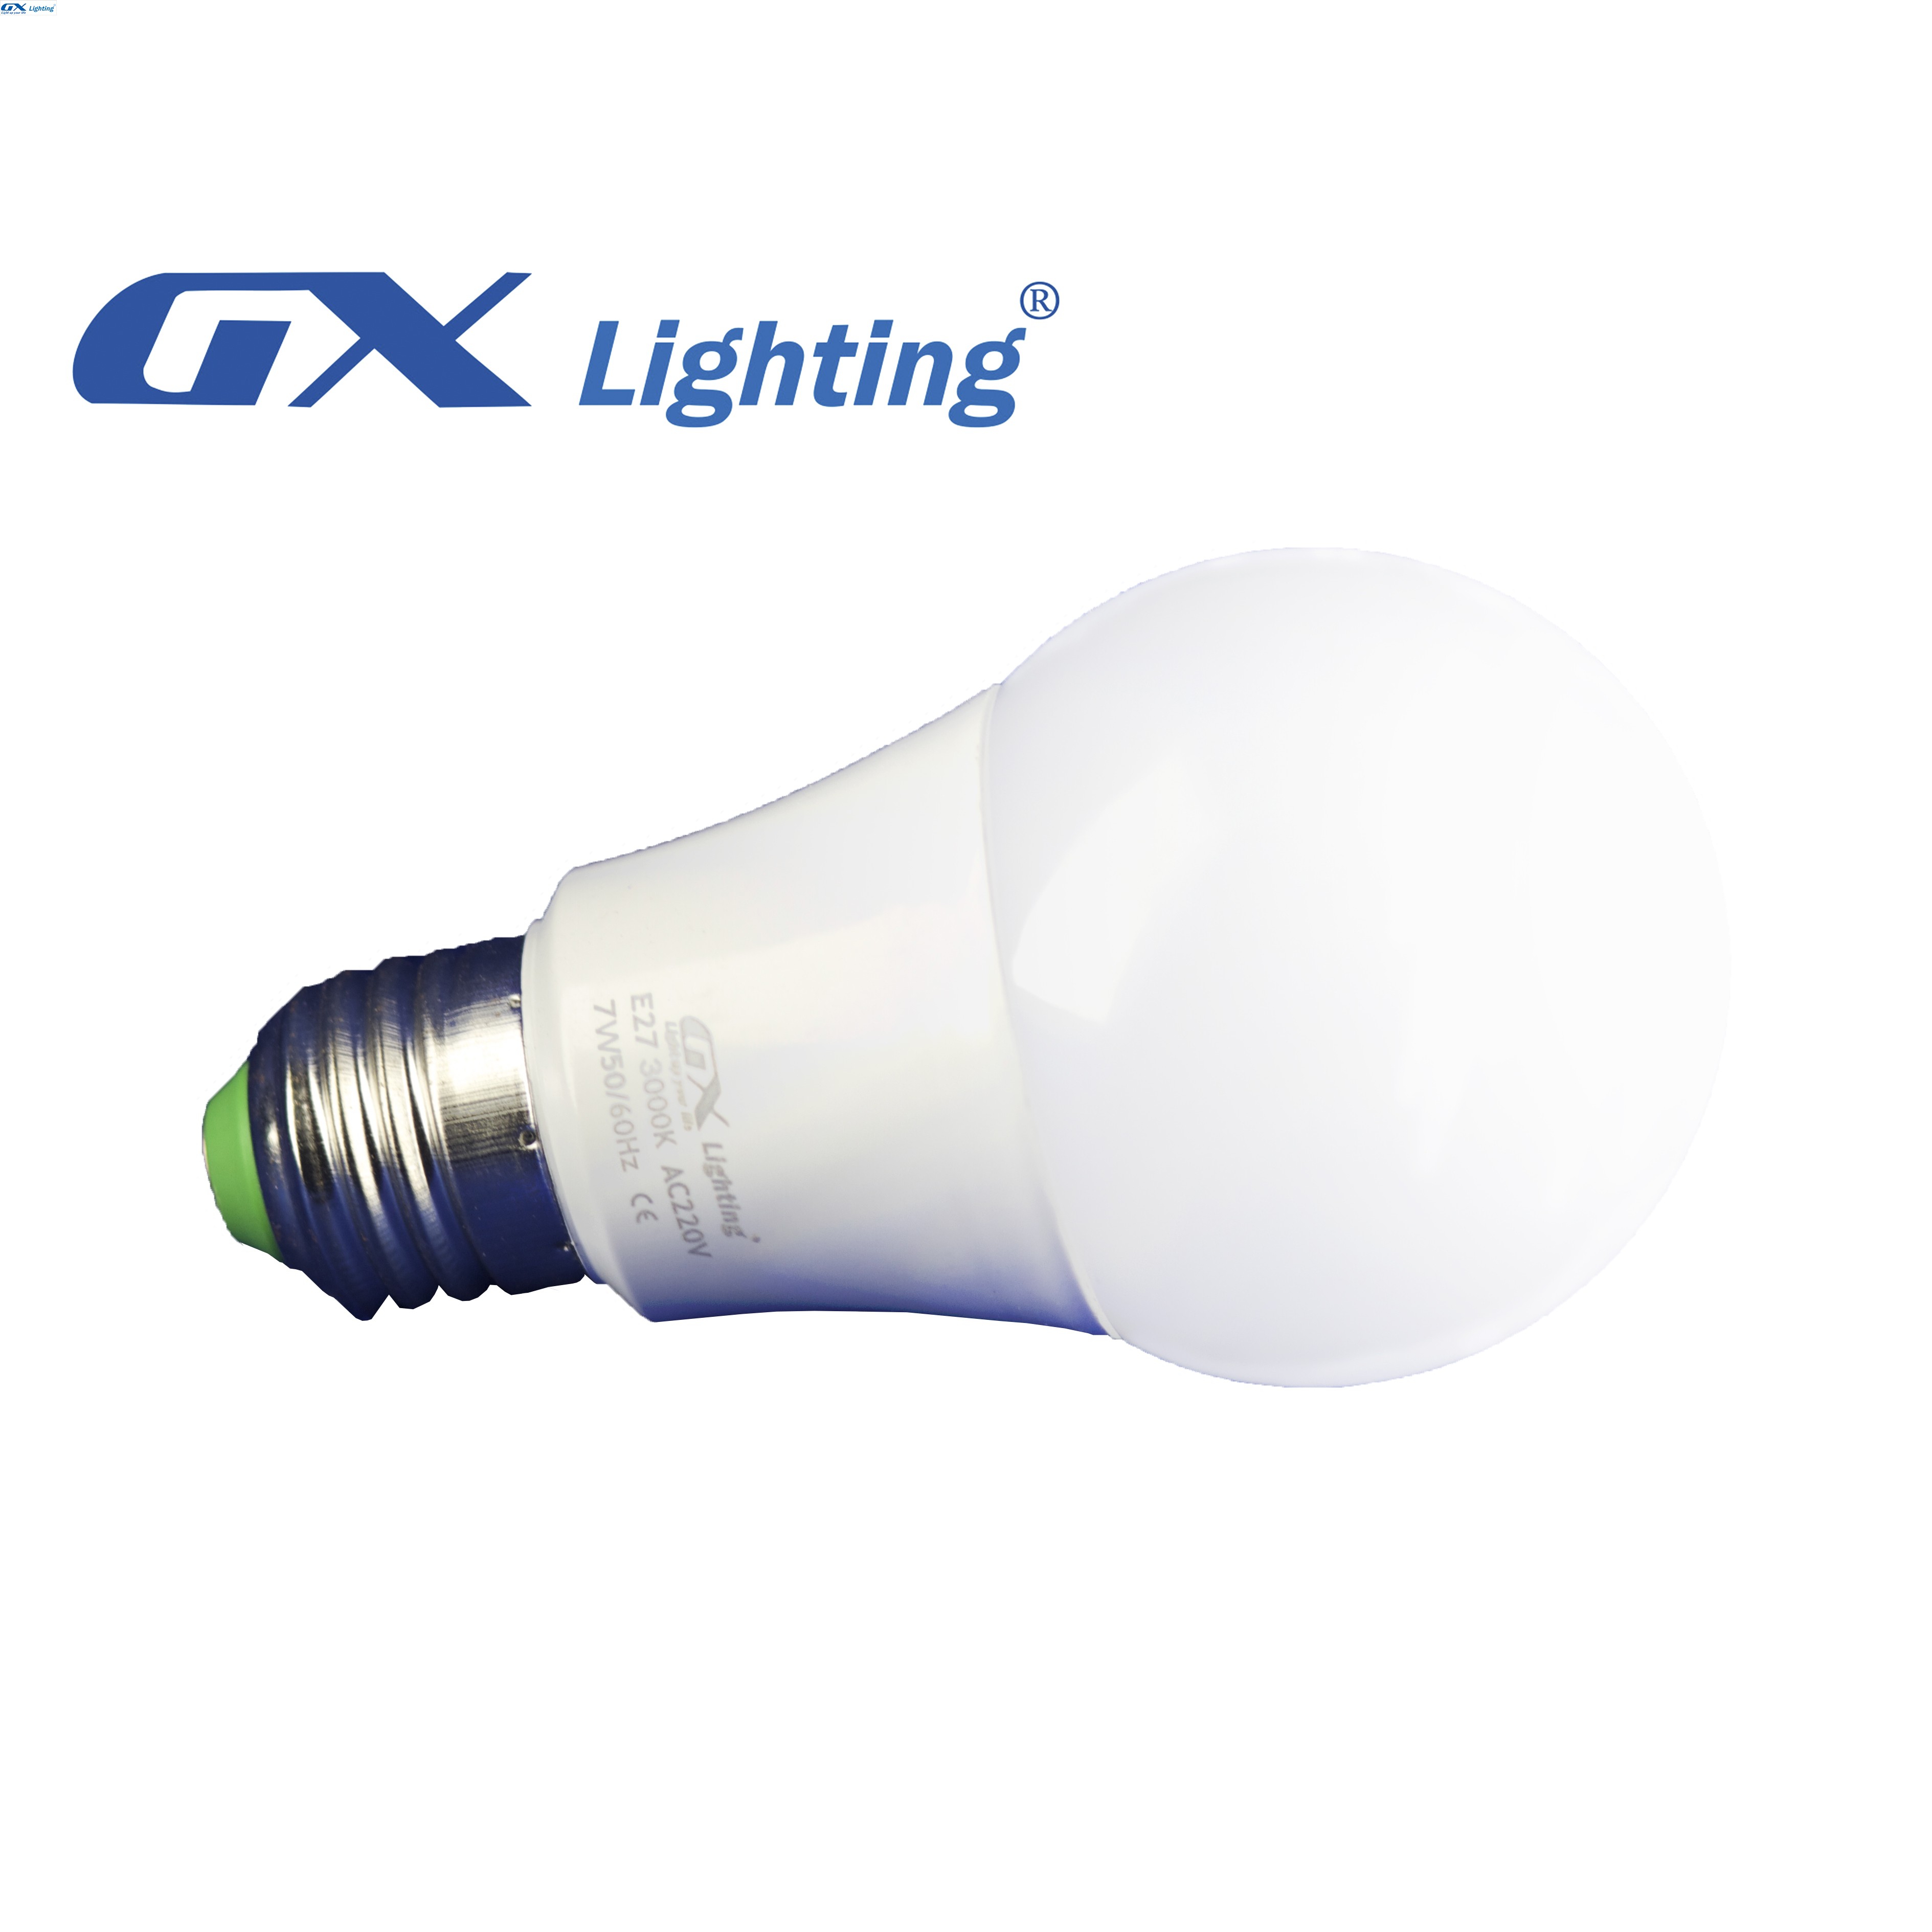 Đèn Led Bóng Tròn GX Lighting 9W QP-904